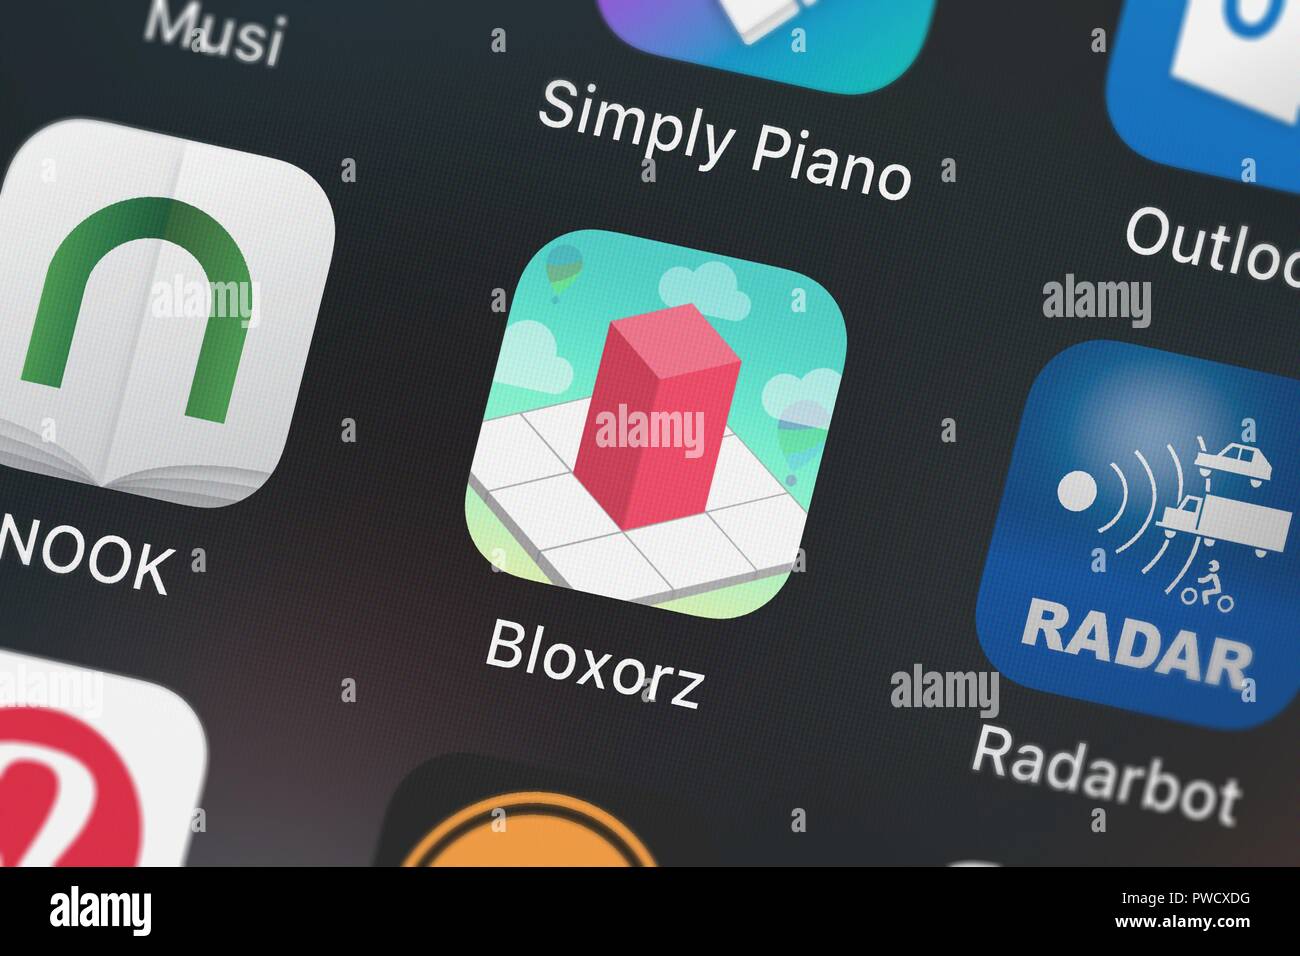 Bloxorz HD Rolling Block on the App Store